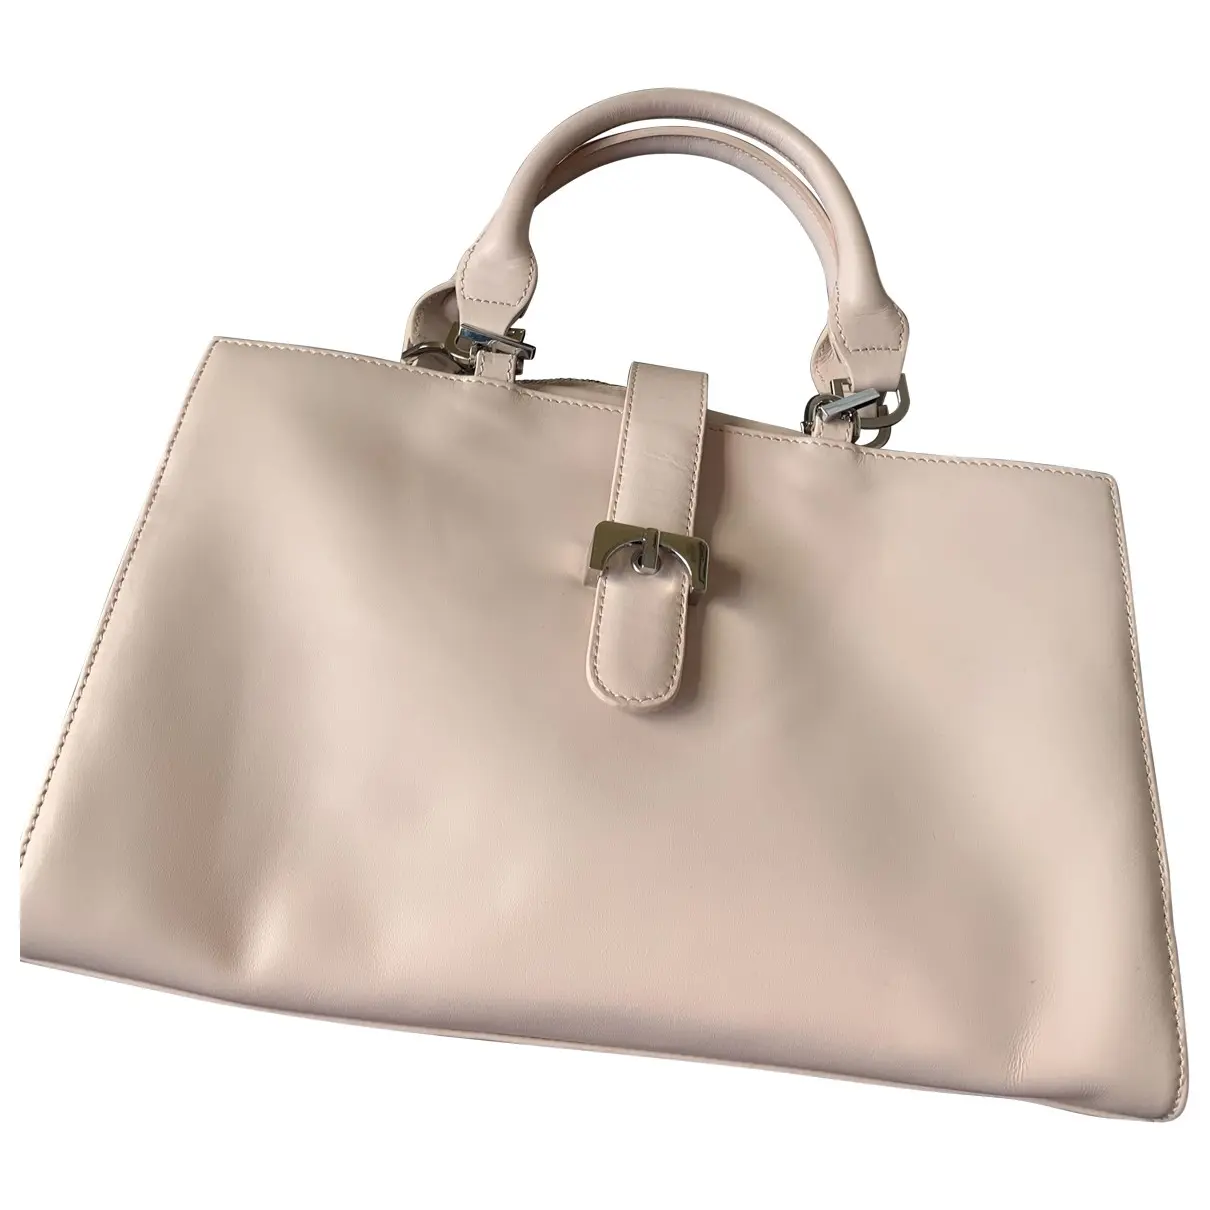 Leather handbag Lk Bennett